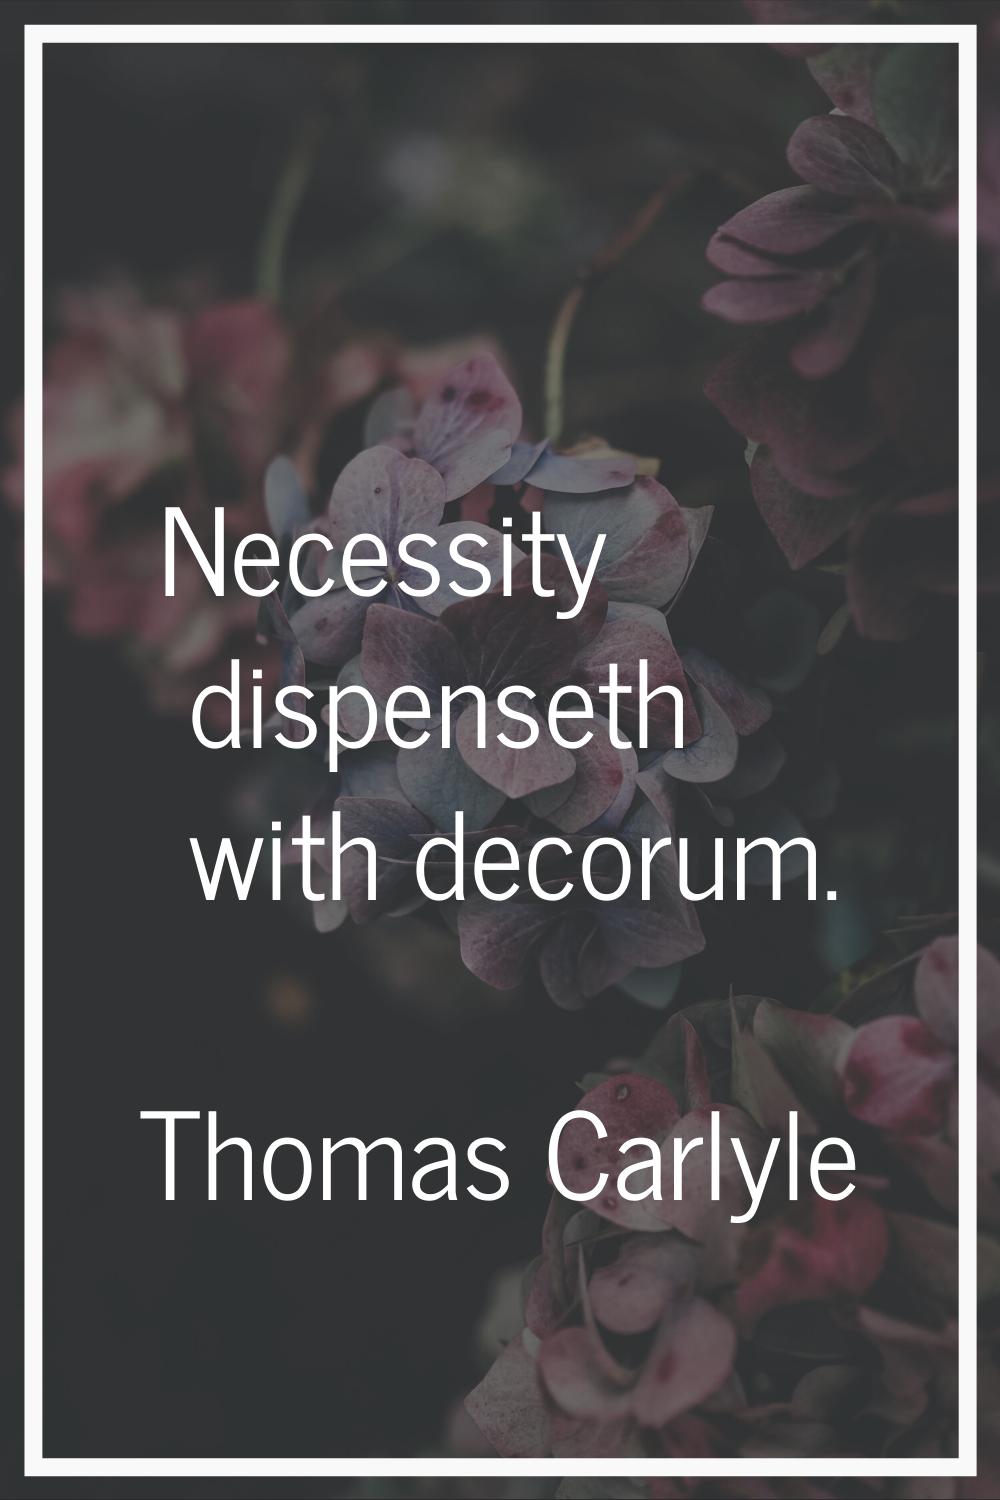 Necessity dispenseth with decorum.